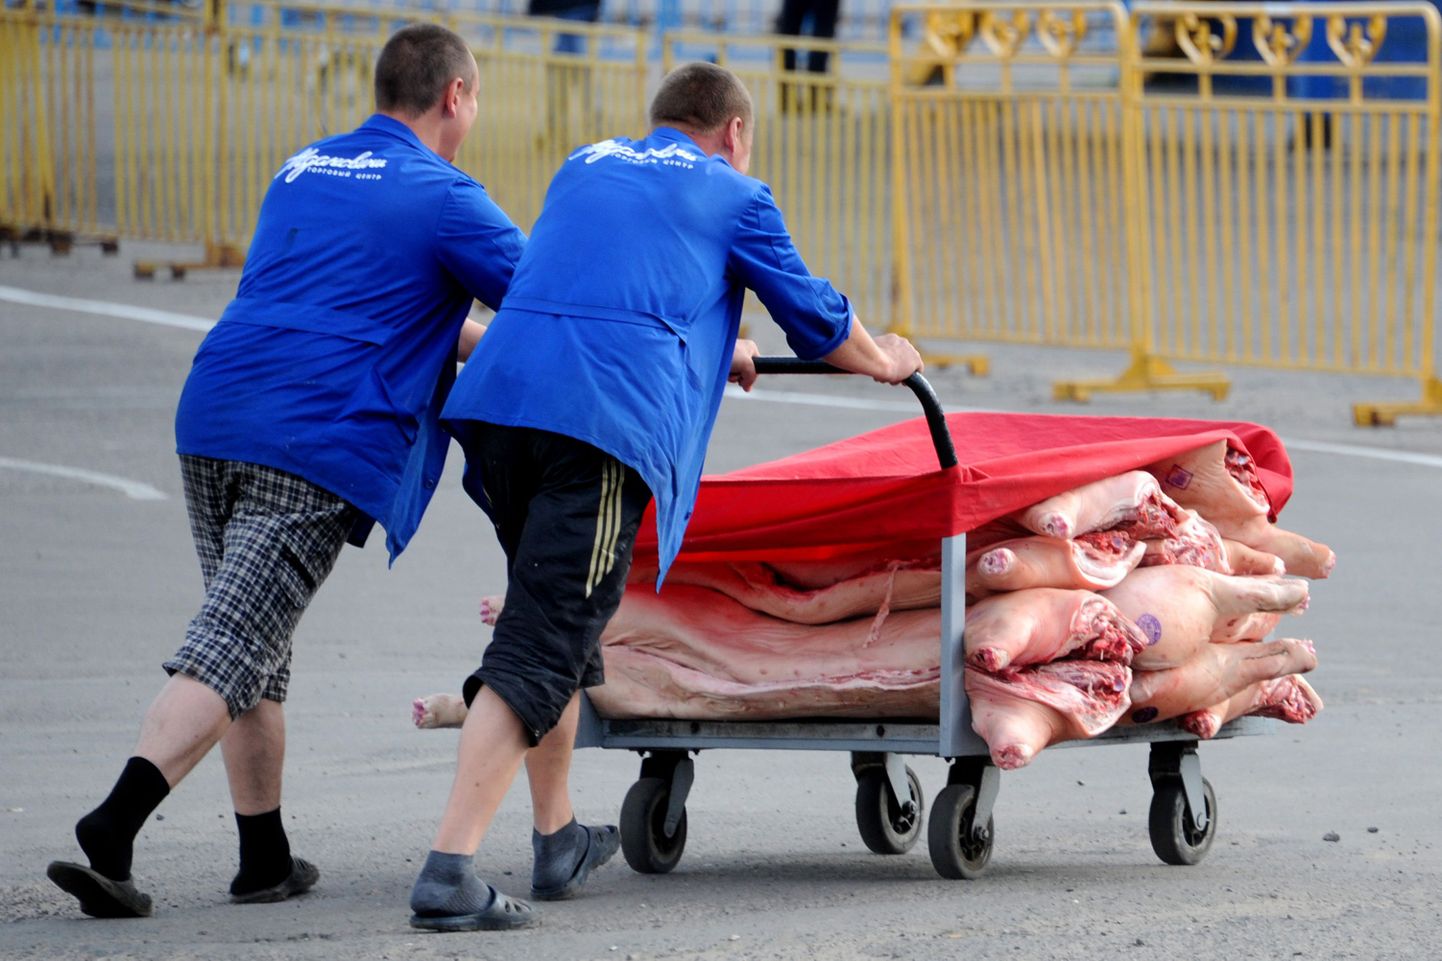 Mehed Minski turul seakeredega käru lükkamas. Venemaa on oktoobris sigade Aafrika katku tõttu juba kahe Valgevene lihatööstuse toodangu imordi keelustanud.